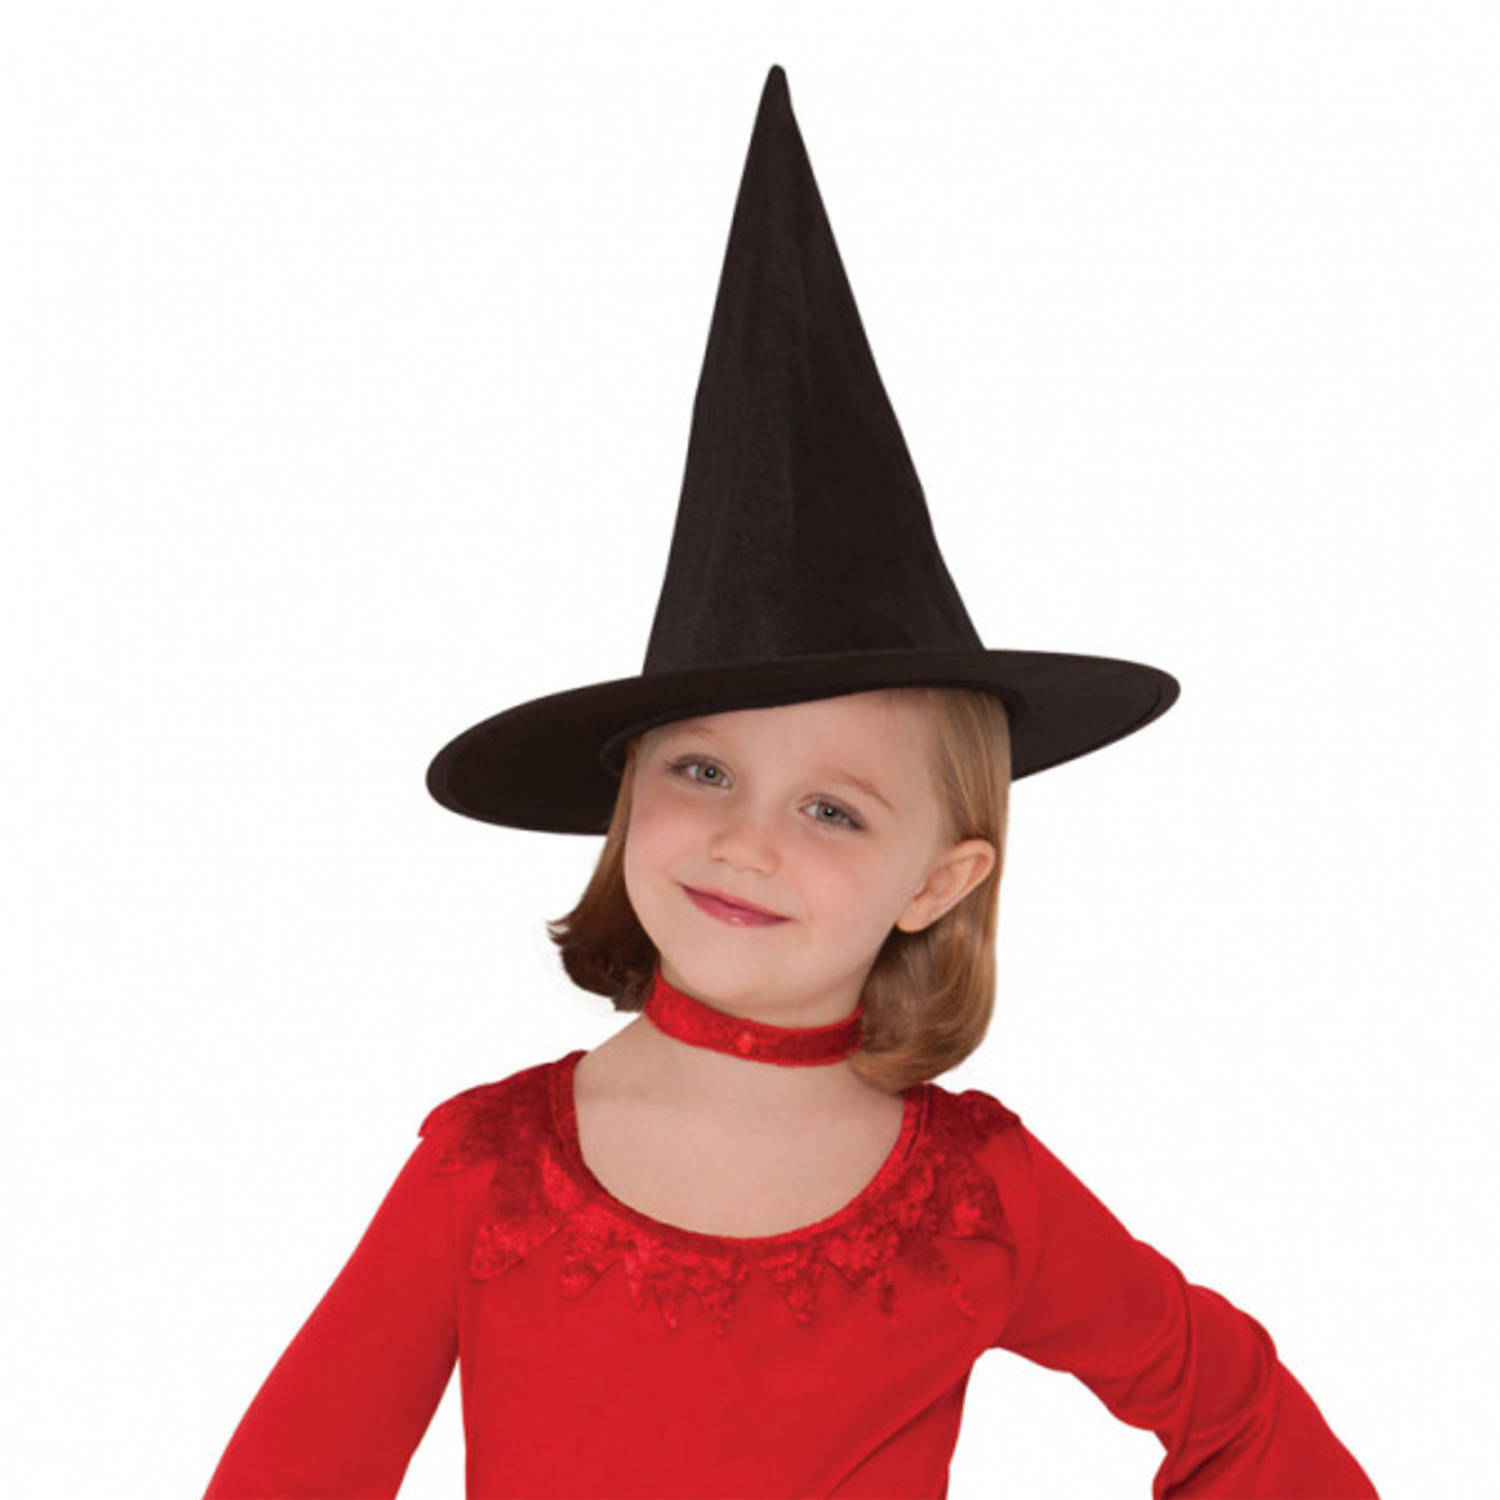 Zwarte verkleed heksenhoed voor kinderen - Halloween/carnaval heksen verkleed accessoires